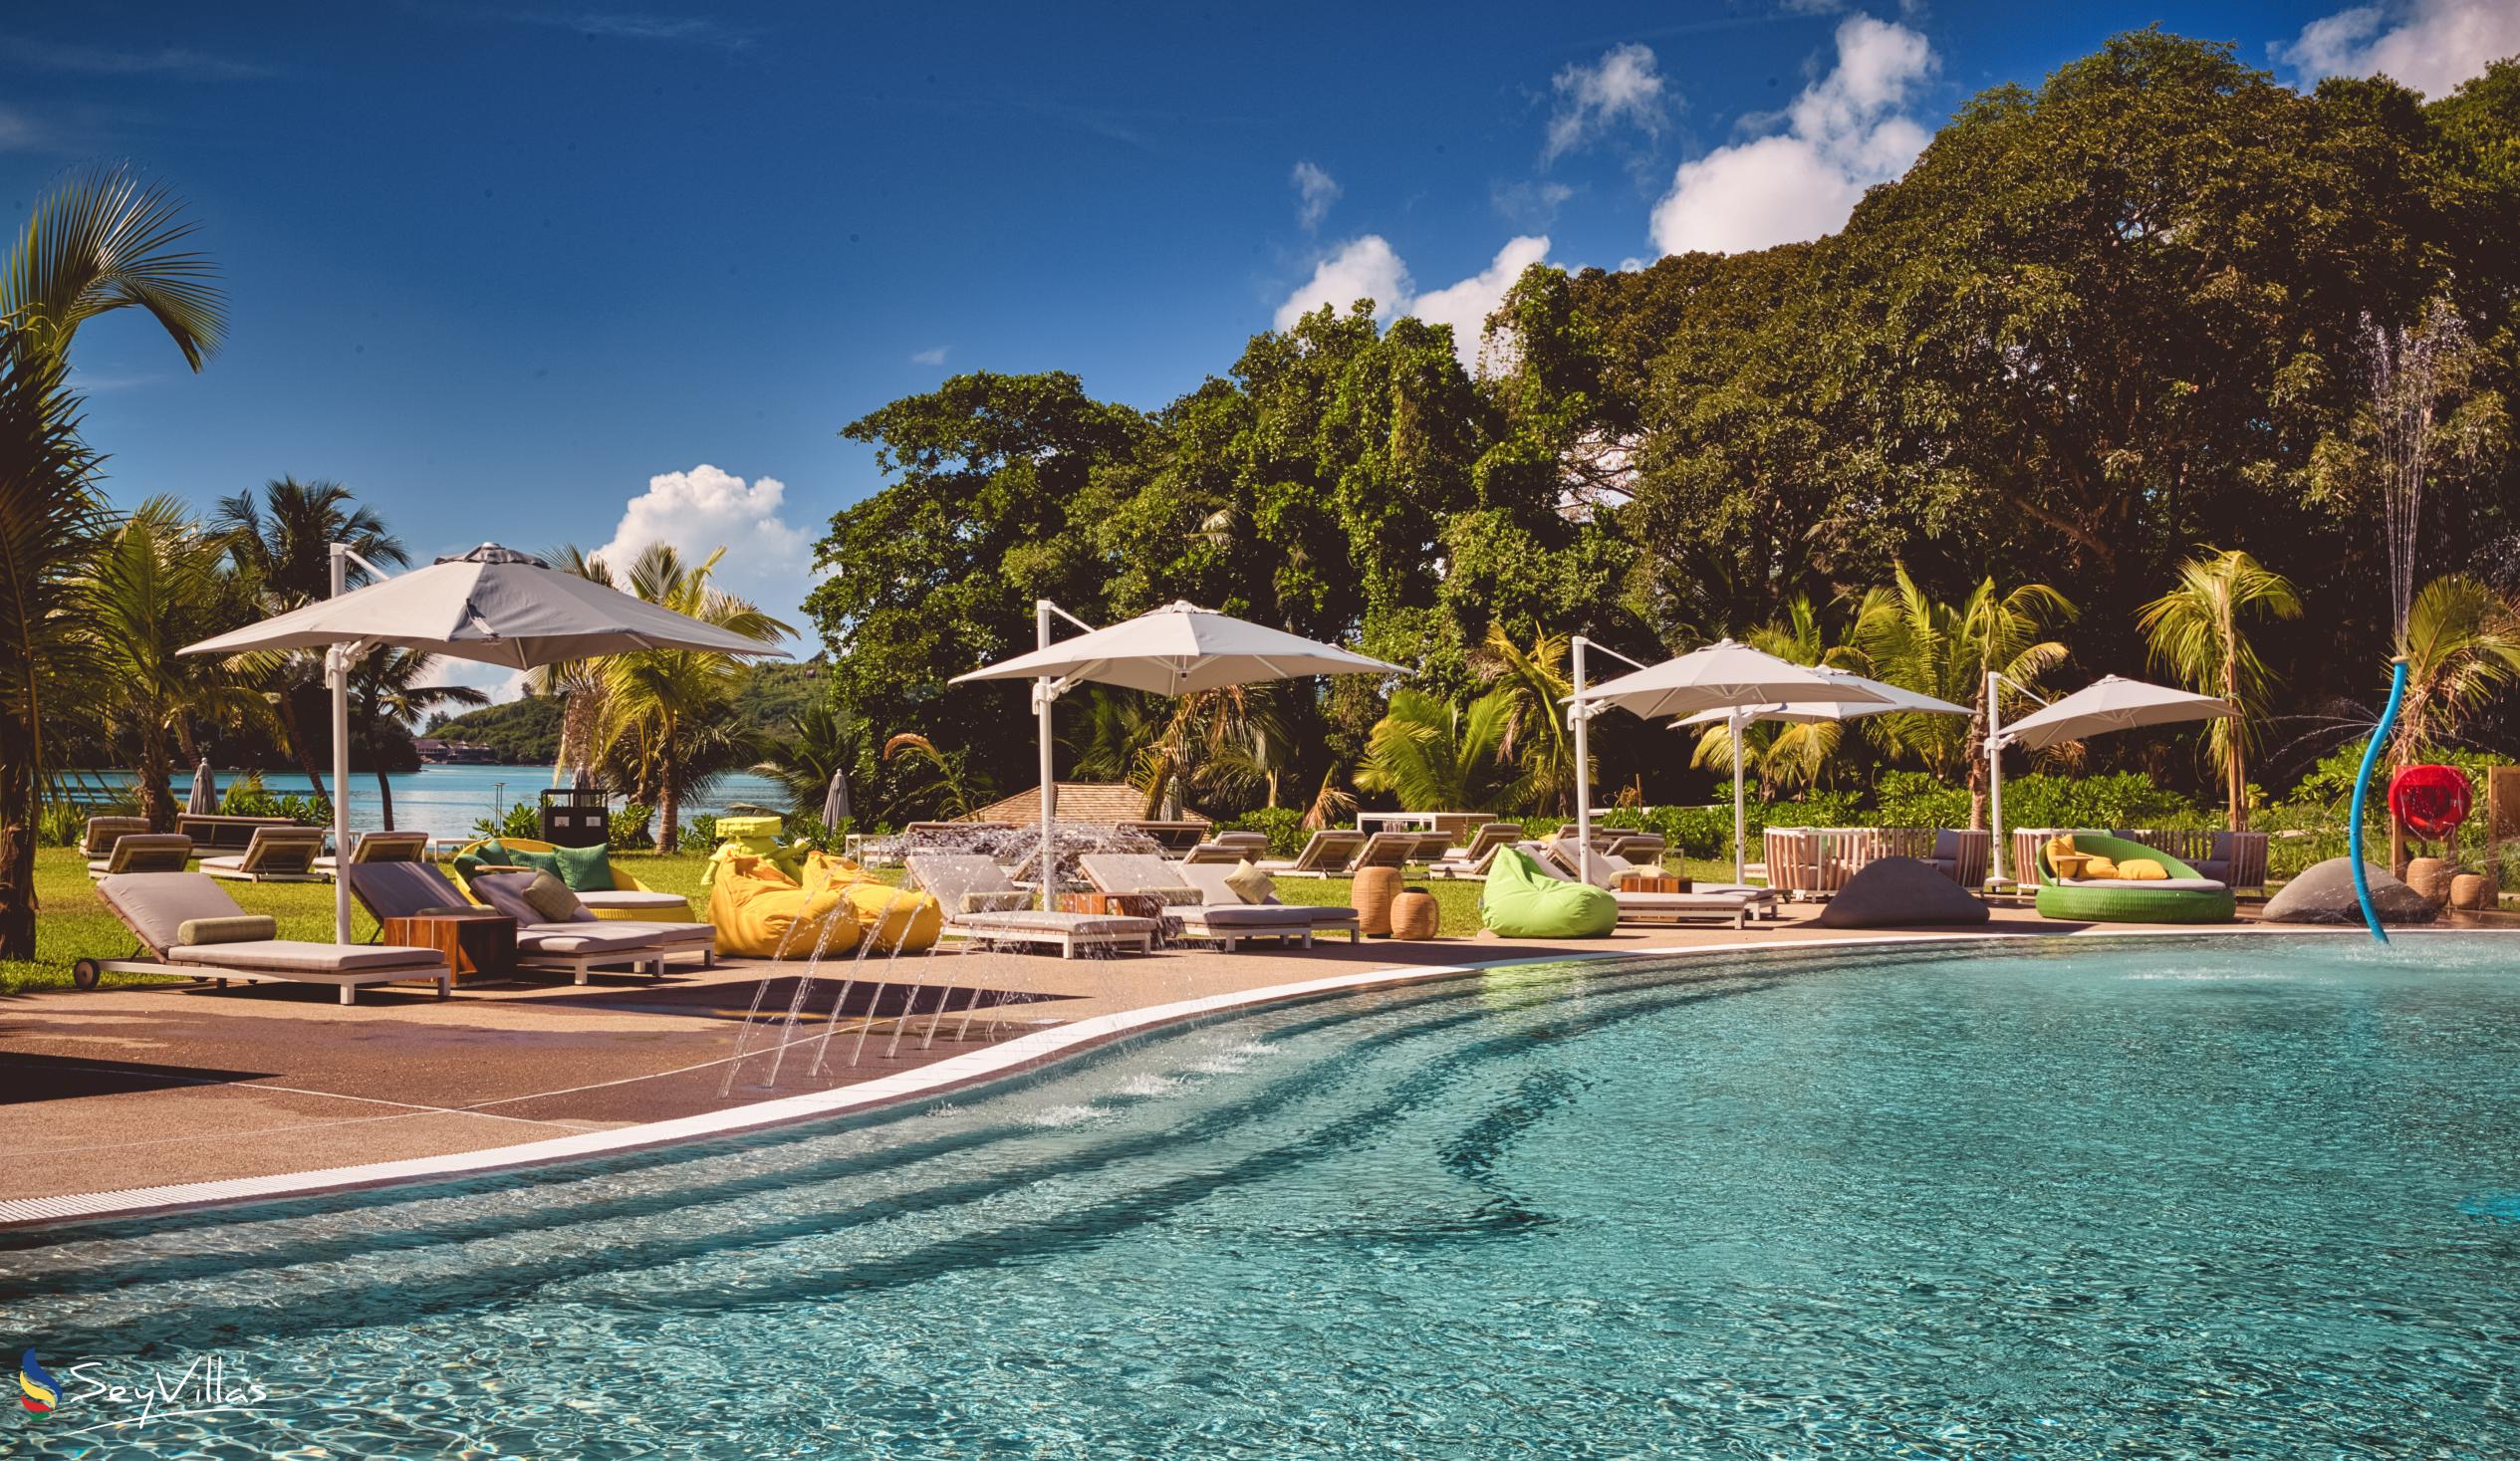 Foto 9: Club Med Seychelles - Extérieur - Saint Anne (Seychelles)